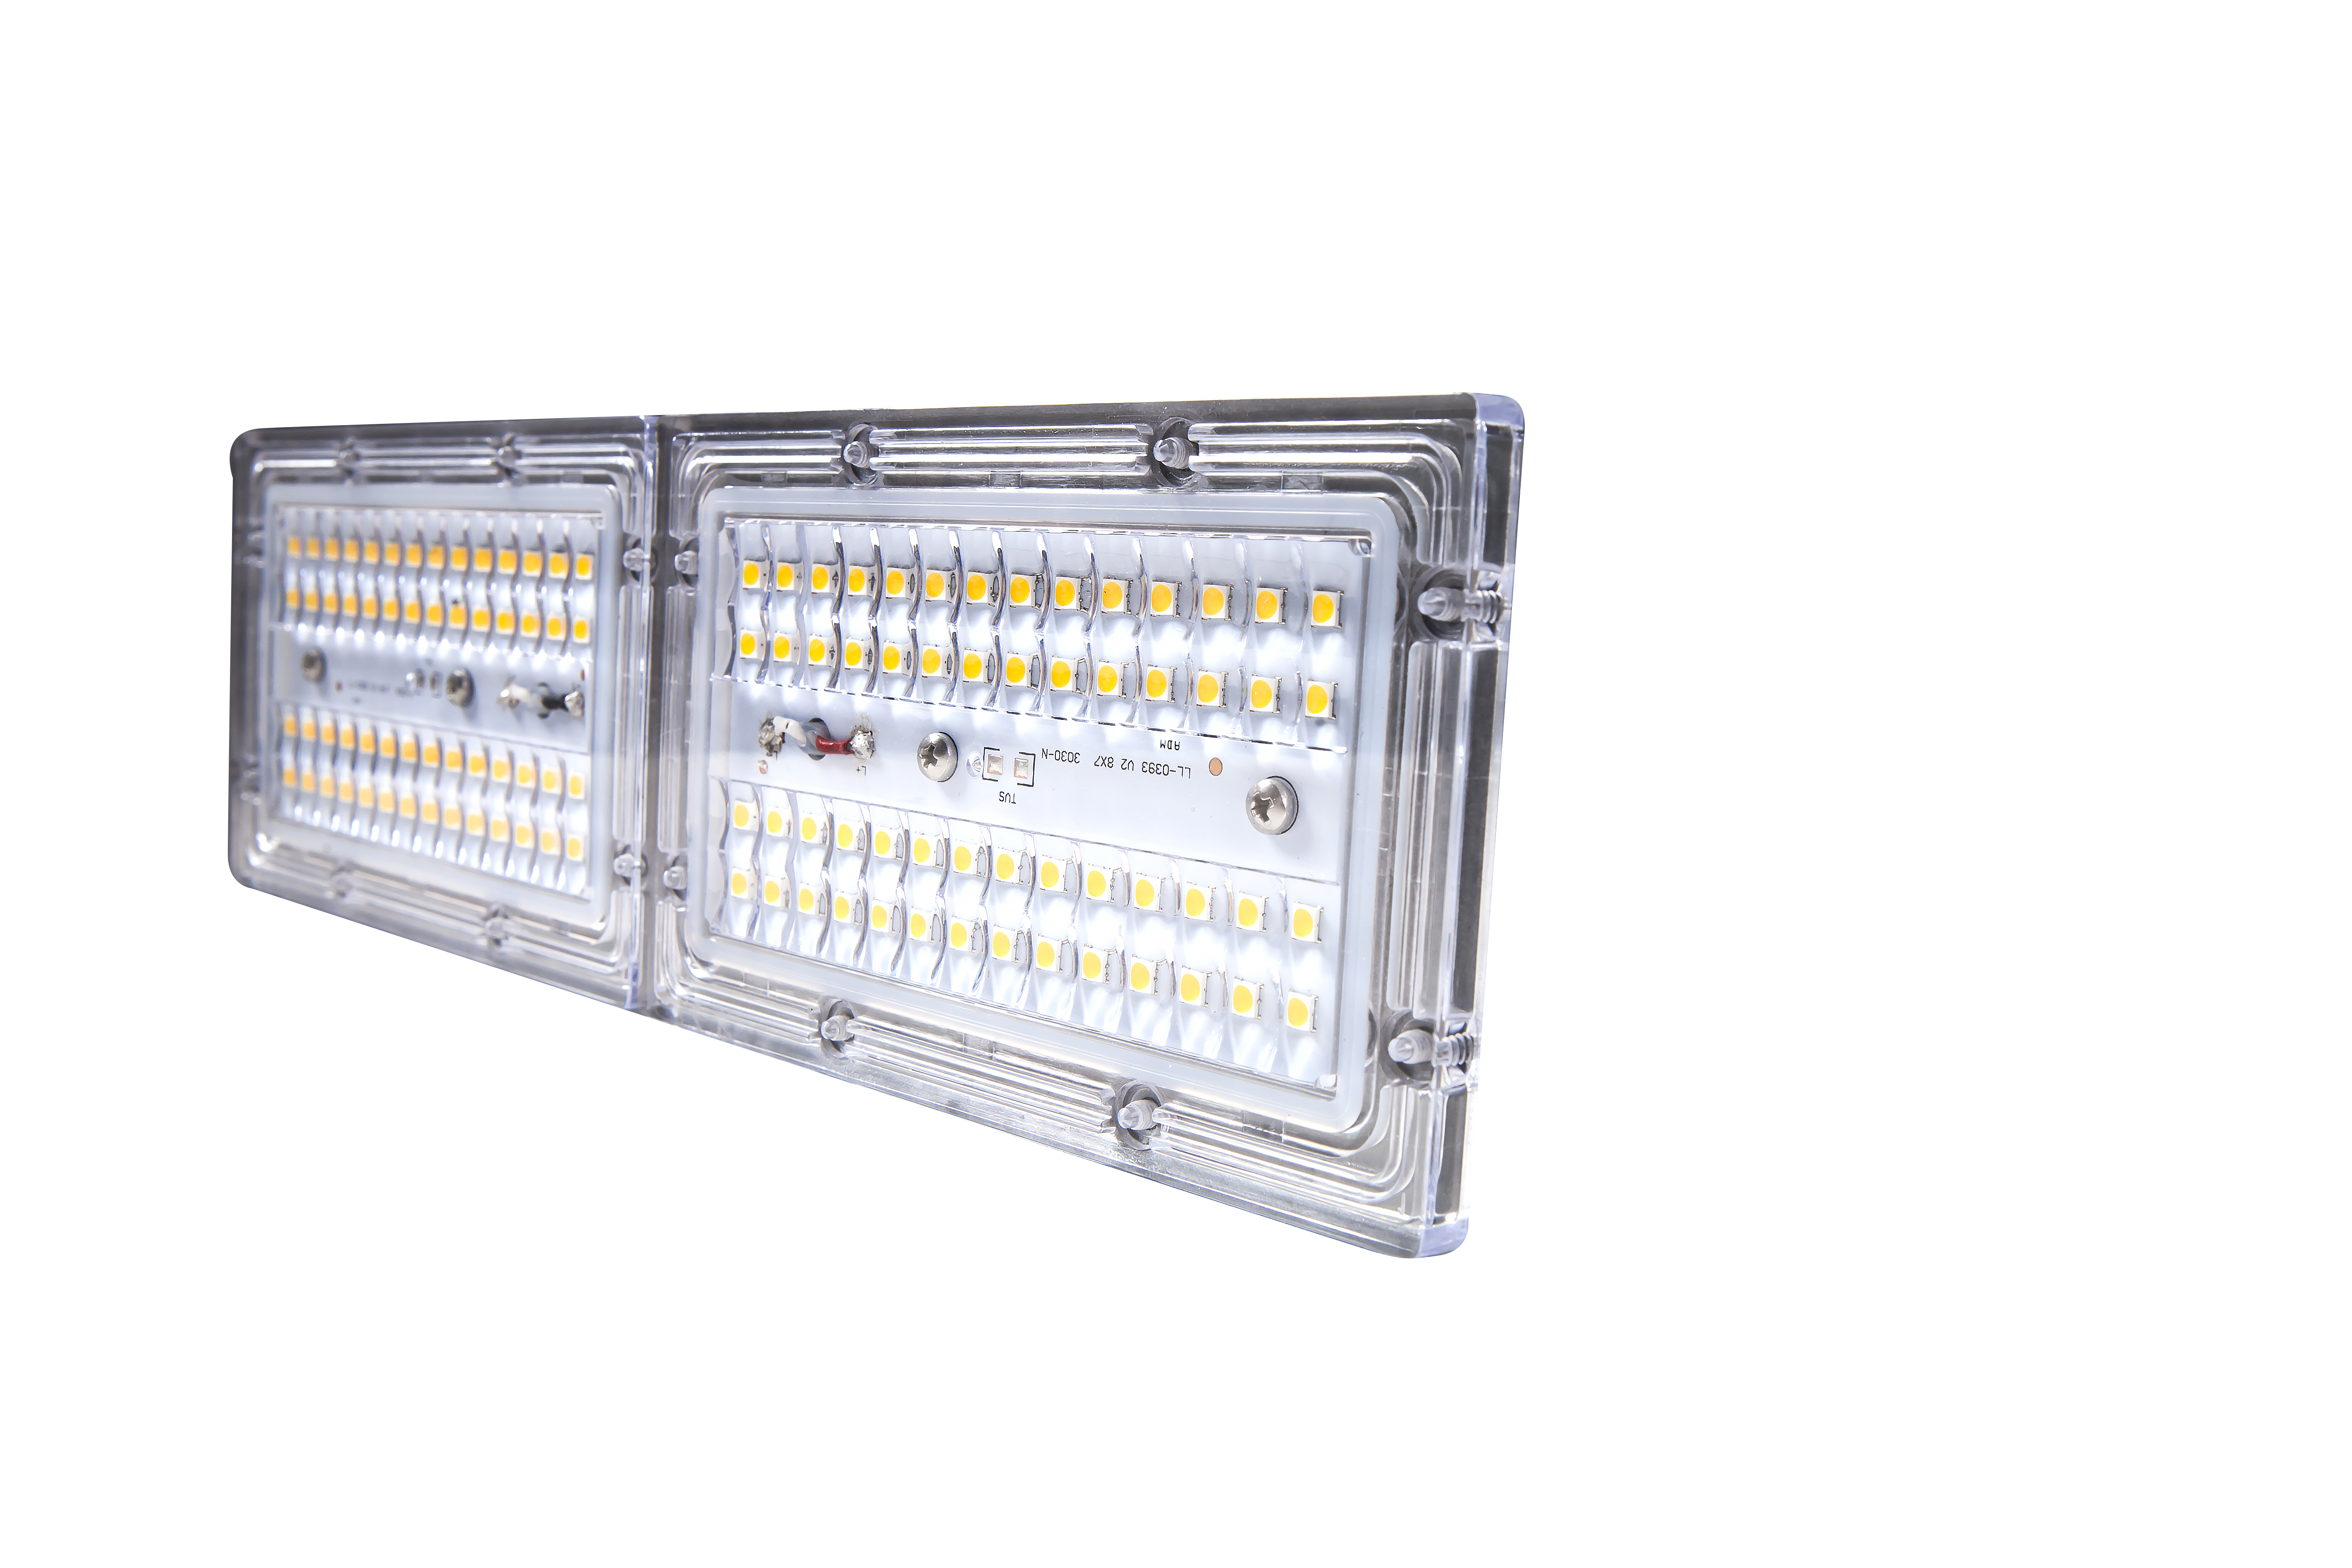 Luz de túnel LED série TE -- Três módulos (suporte internacional)